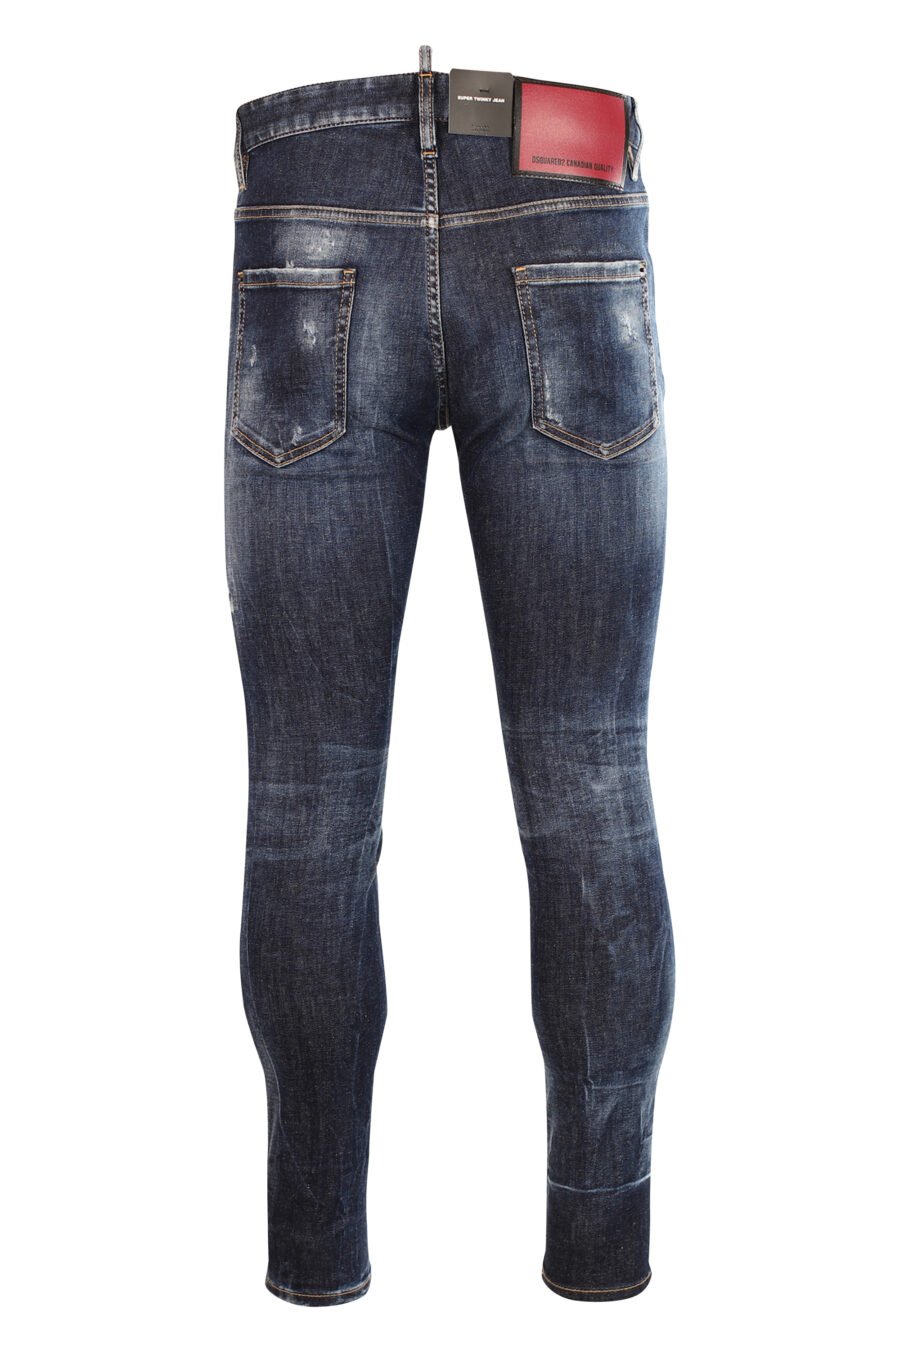 Jeans "super twinkey jean" blue with rips - 8052134966914 3